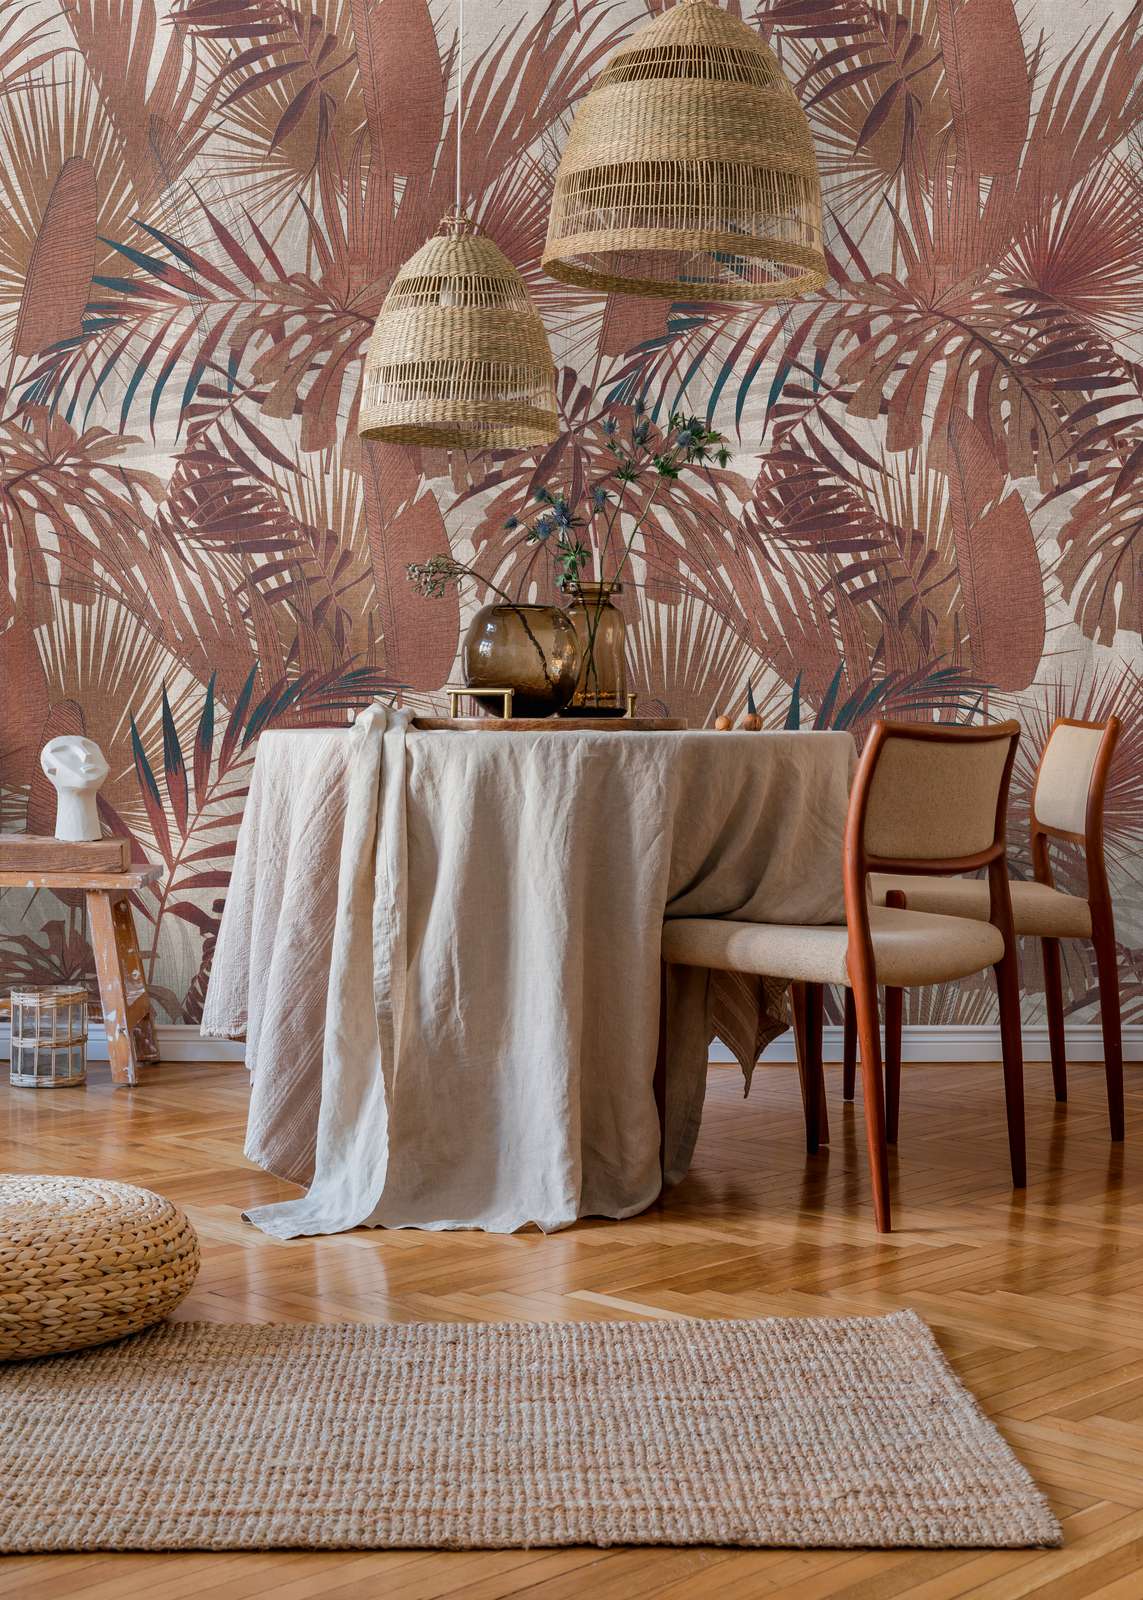             Papel pintado no tejido con motivo de hojas de selva - marrón rojizo, beige
        